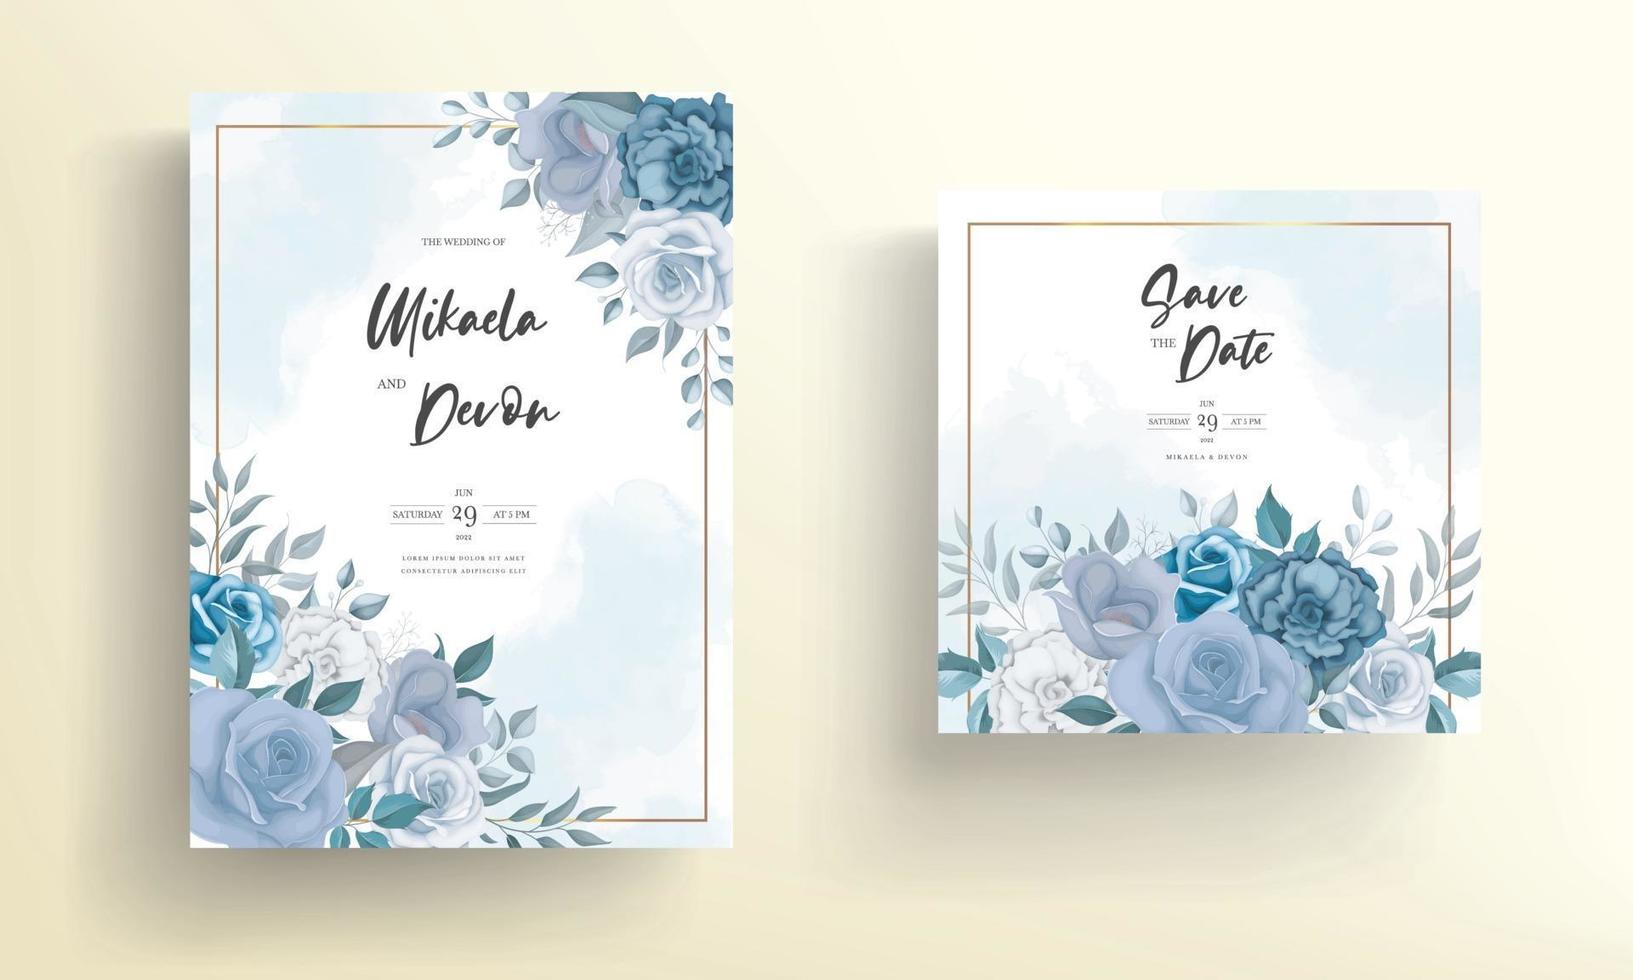 carta di invito a nozze moderna con fiori blu vettore